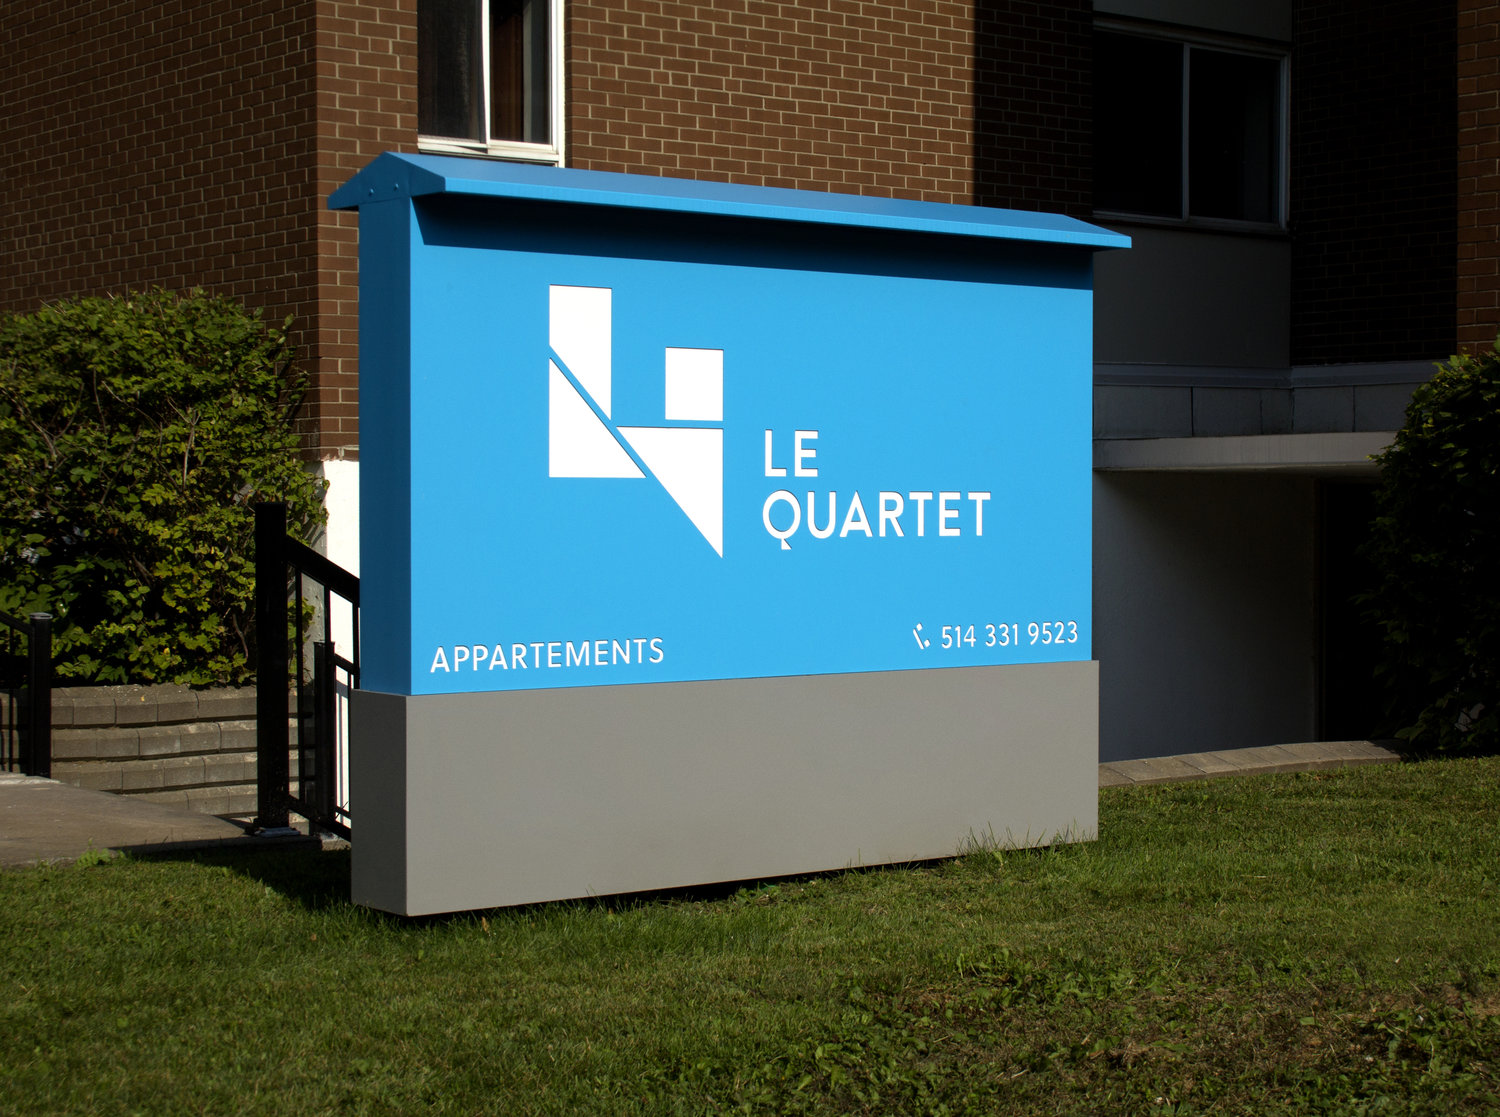 le Quartet 住宅区品牌标识设计 ©Stéphanie Aubin